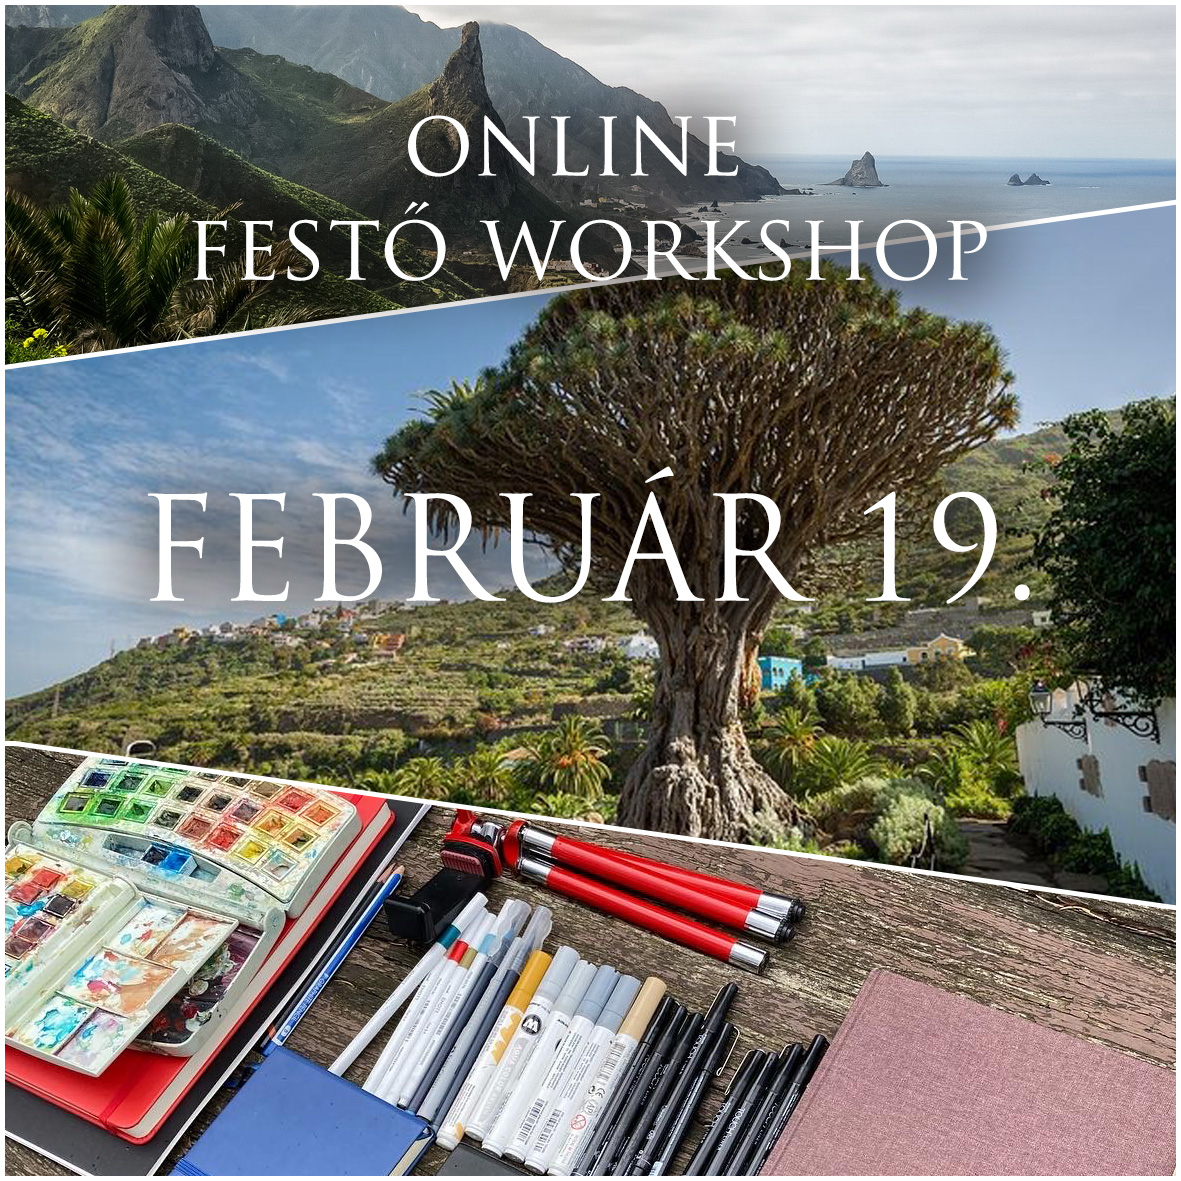 Online festő workshopok Teneriféről.